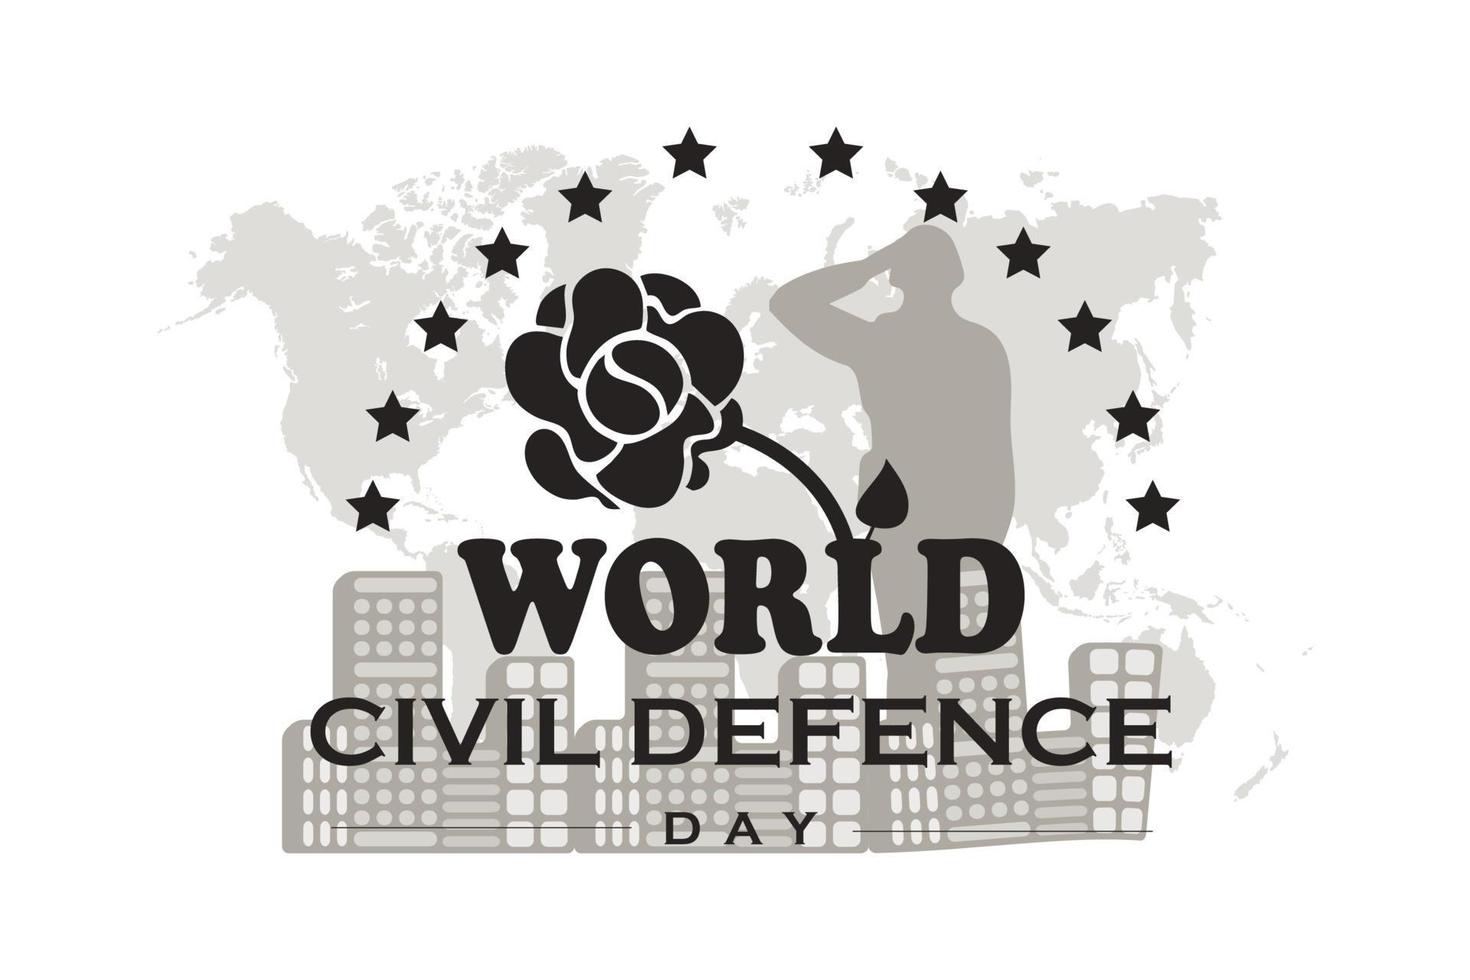 dia mundial da defesa civil. exército, mapa do mundo. desenhos vetoriais. adequado para banners, sites, cartazes, modelos, aplicativos, planos de fundo e outros vetor